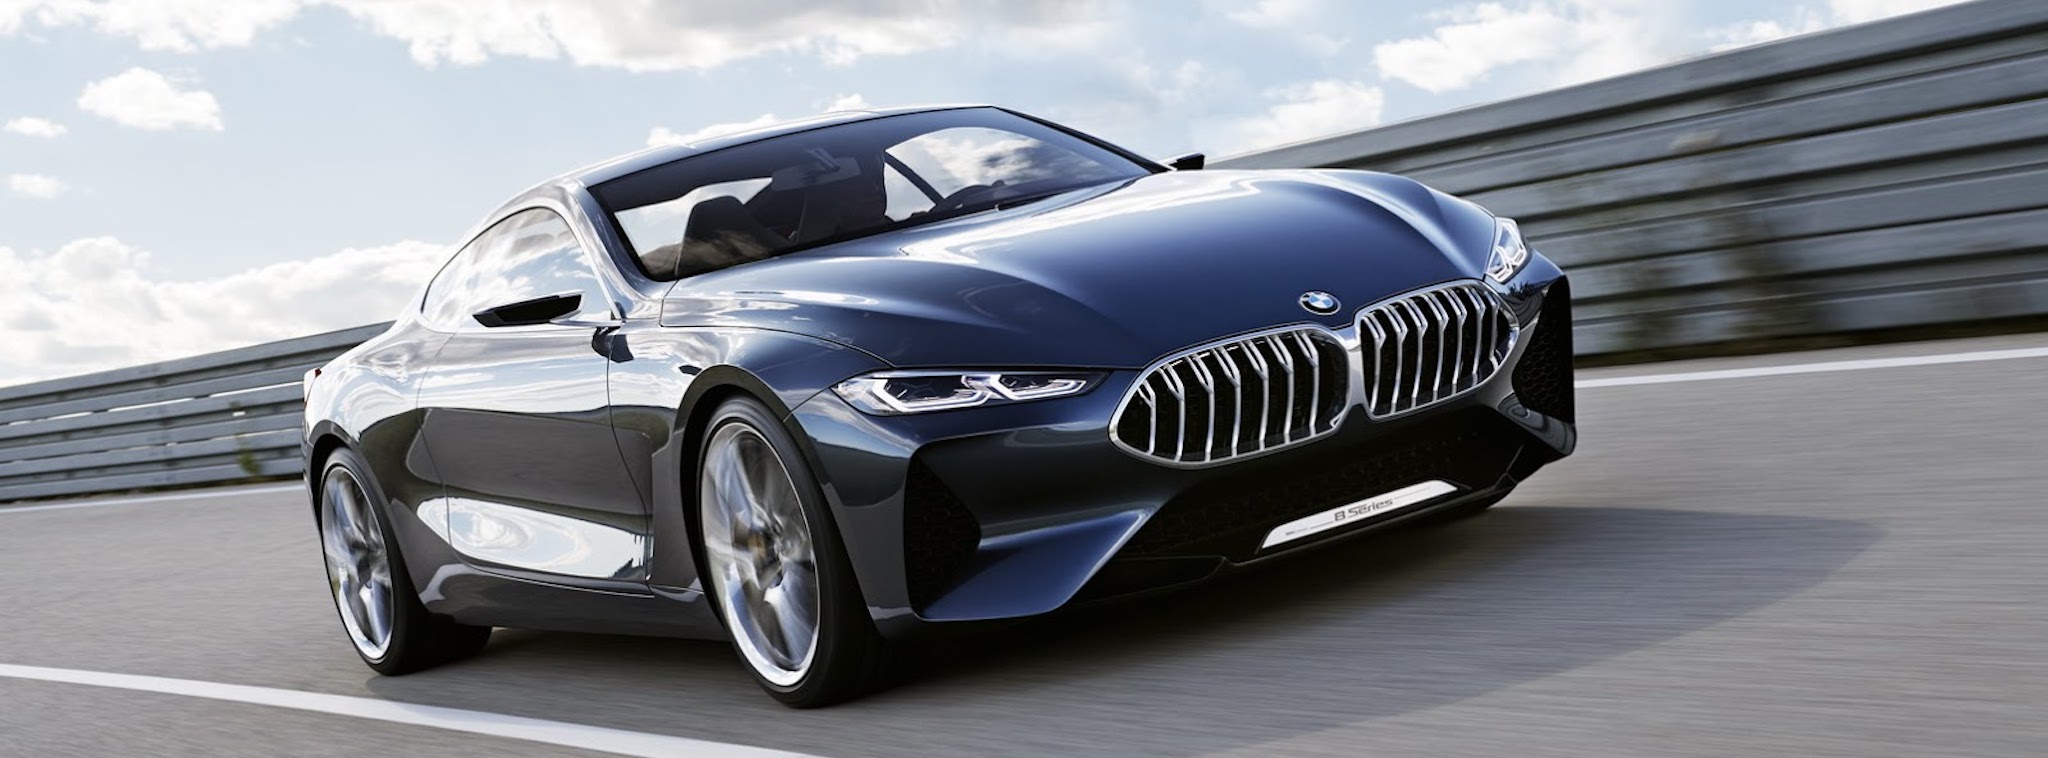 [Hình ảnh] BMW 8 Series Concept chính thức ra mắt; năm 2018 sẽ bán ra